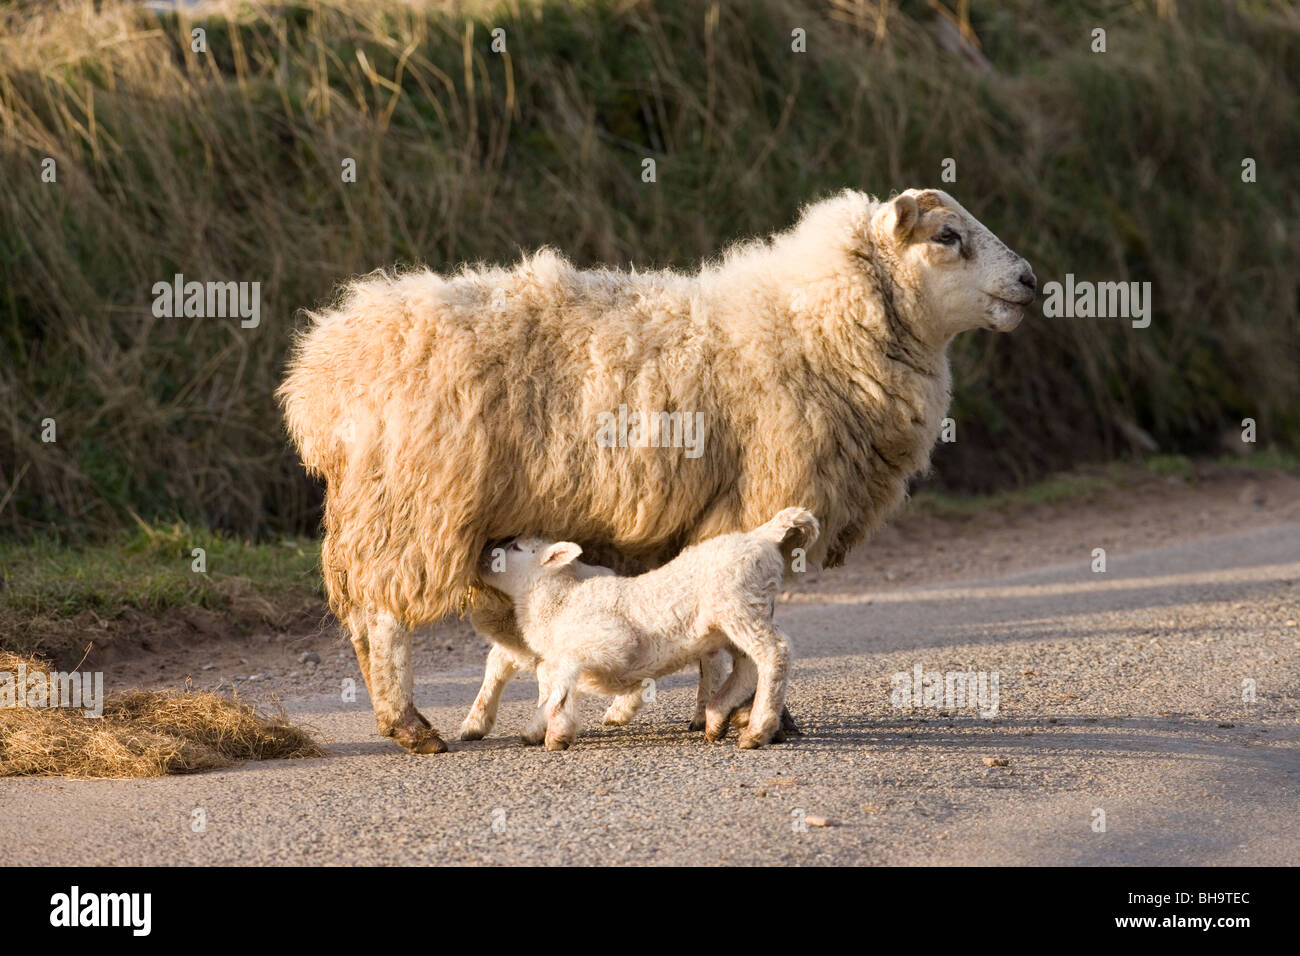 La oveja y el amamantamiento de los corderos. Ovejas. Ovis aries. Carretera, Escocia. Foto de stock